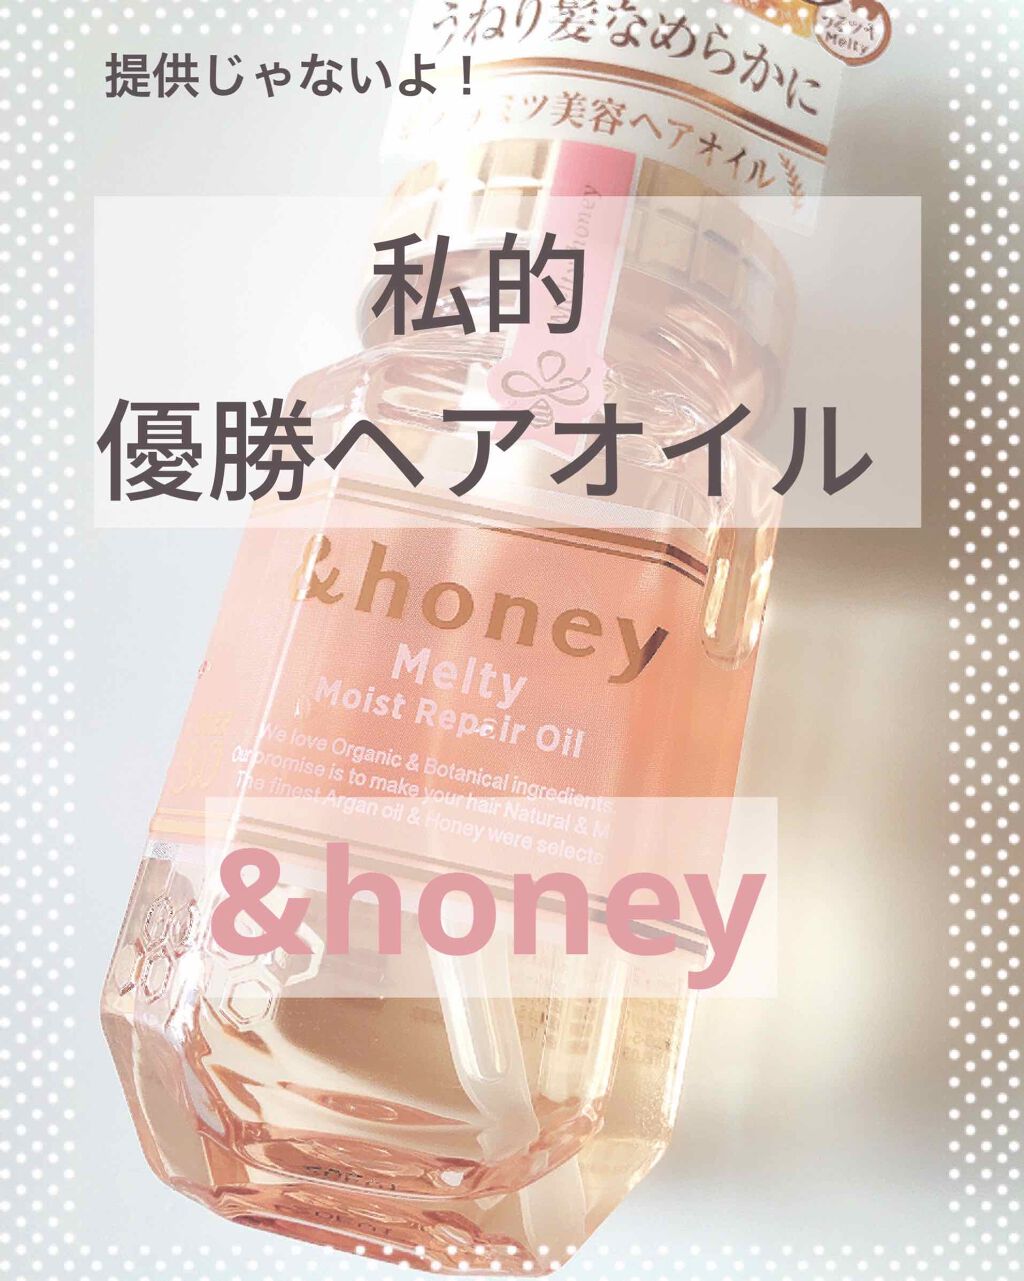 Honey Melty モイストリペア ヘアオイル 3 0 Honeyの口コミ Honeyのヘアオイルがほんっとに良すぎ By さんさい フォロバ 10代後半 Lips